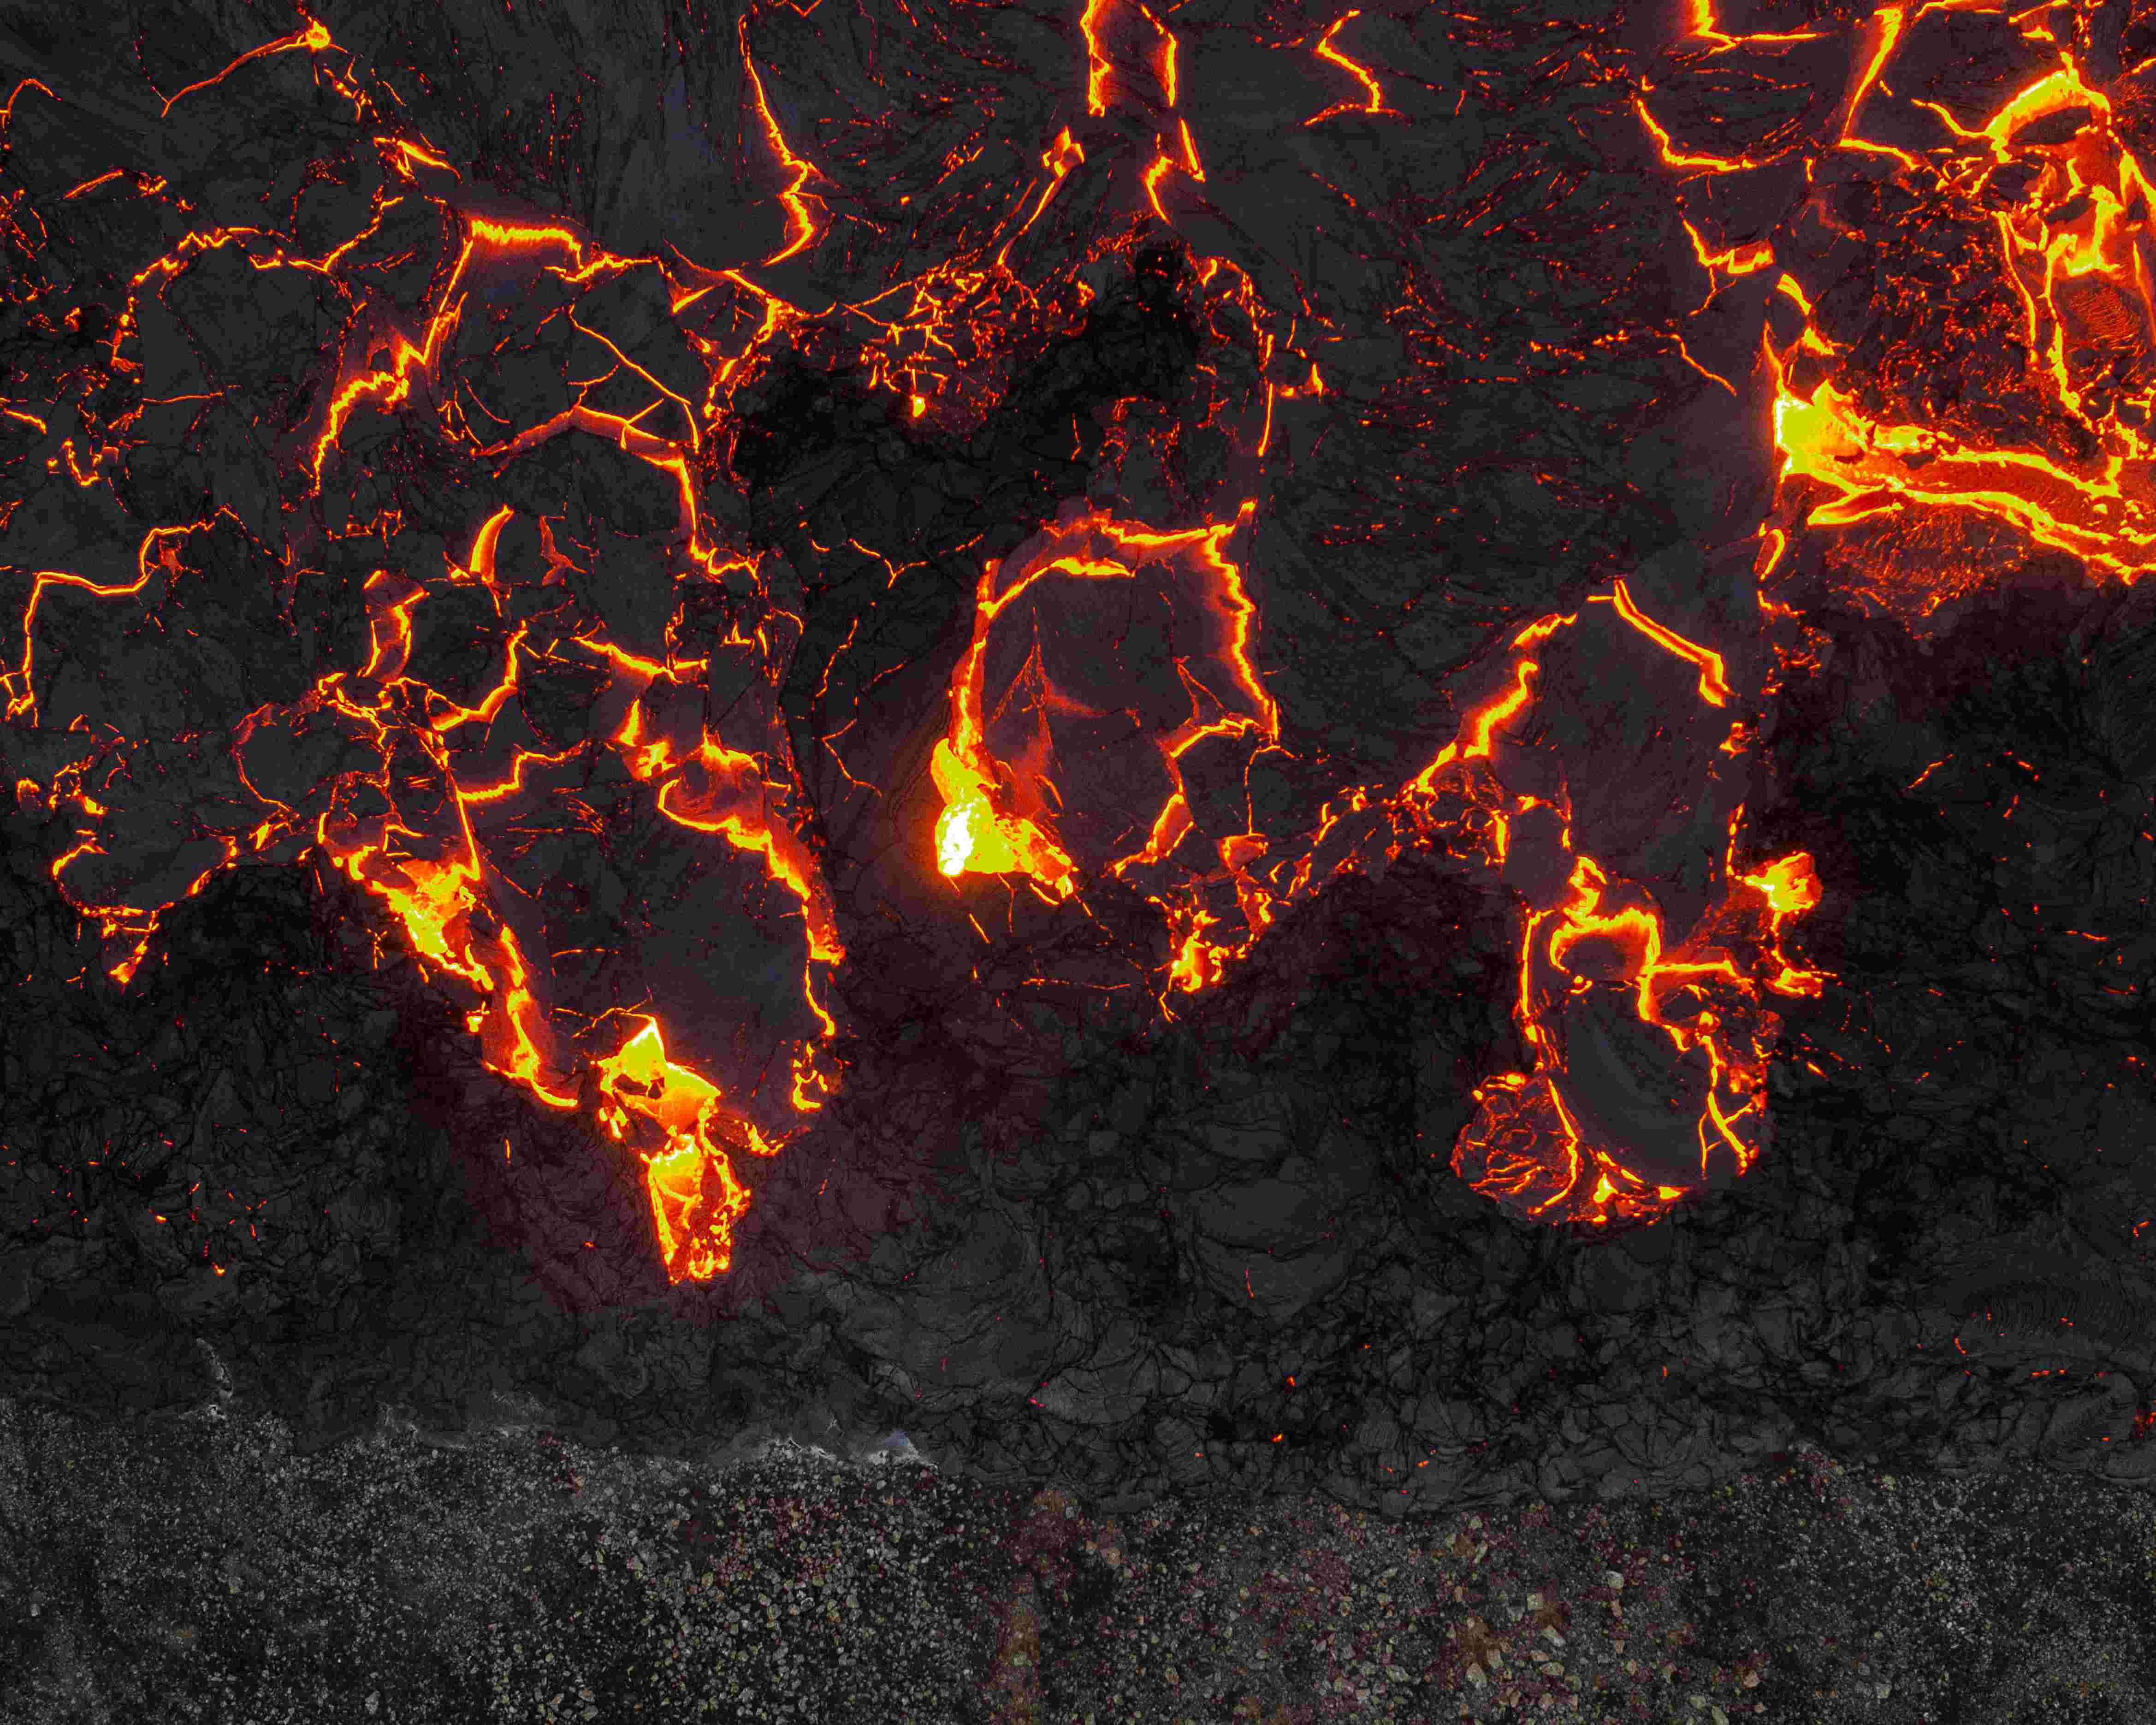 摄影师用无人机近距离拍摄火山熔岩流淌 呈现大自然震撼力量